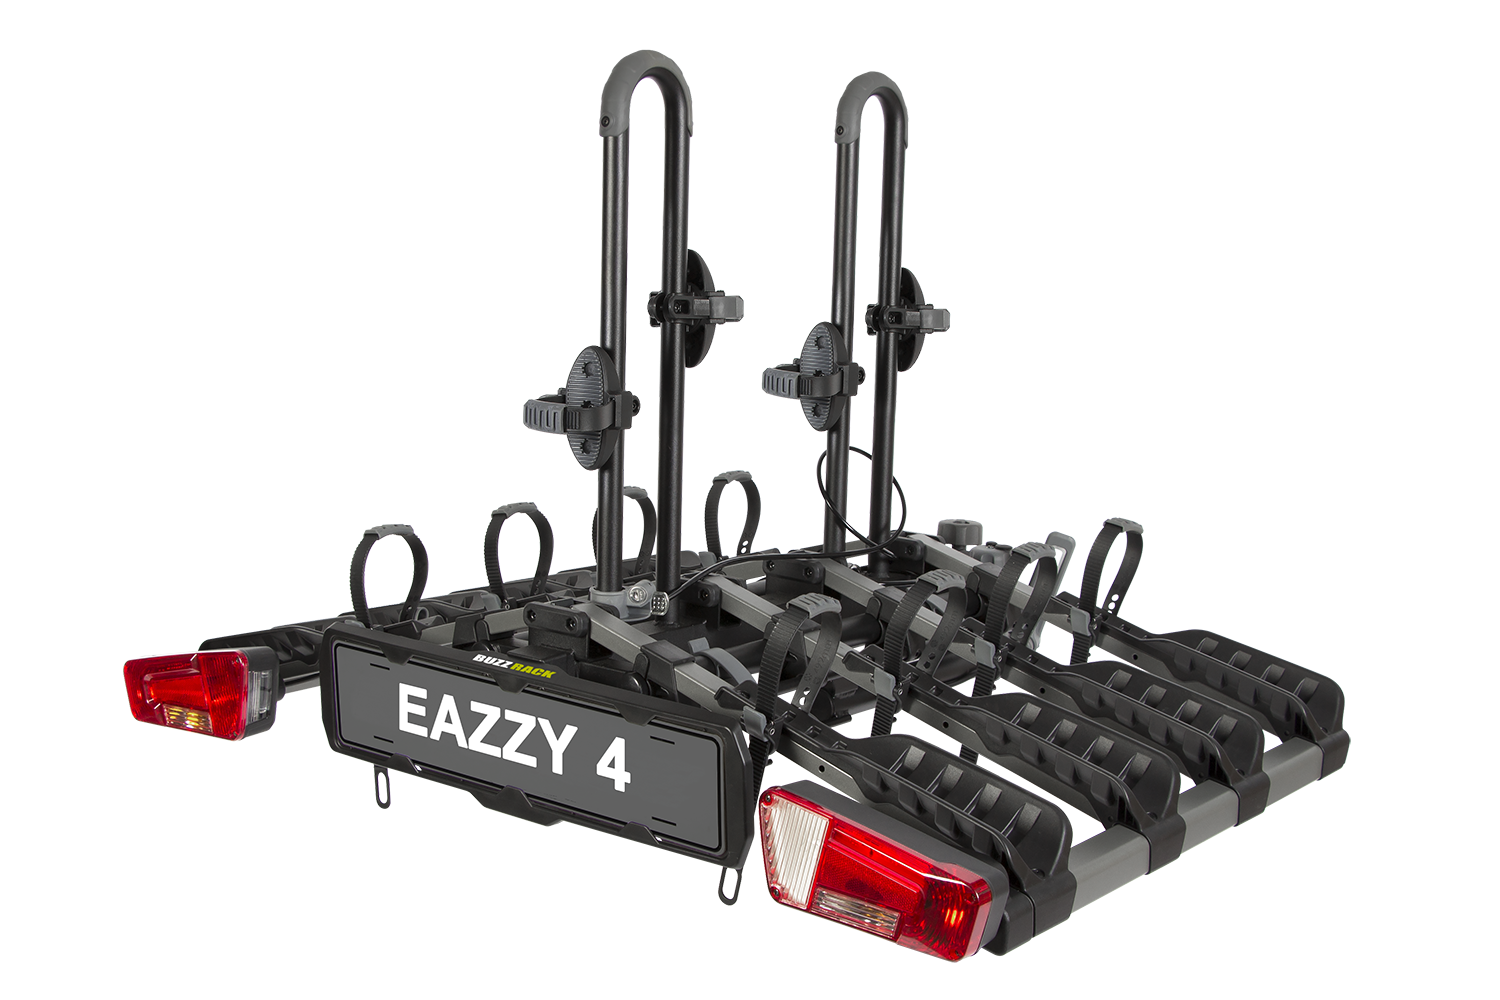 Buzzrack Eazzy 4 (Tow Ball) 4 Bike Platform Rack - BR-EAZZY-4